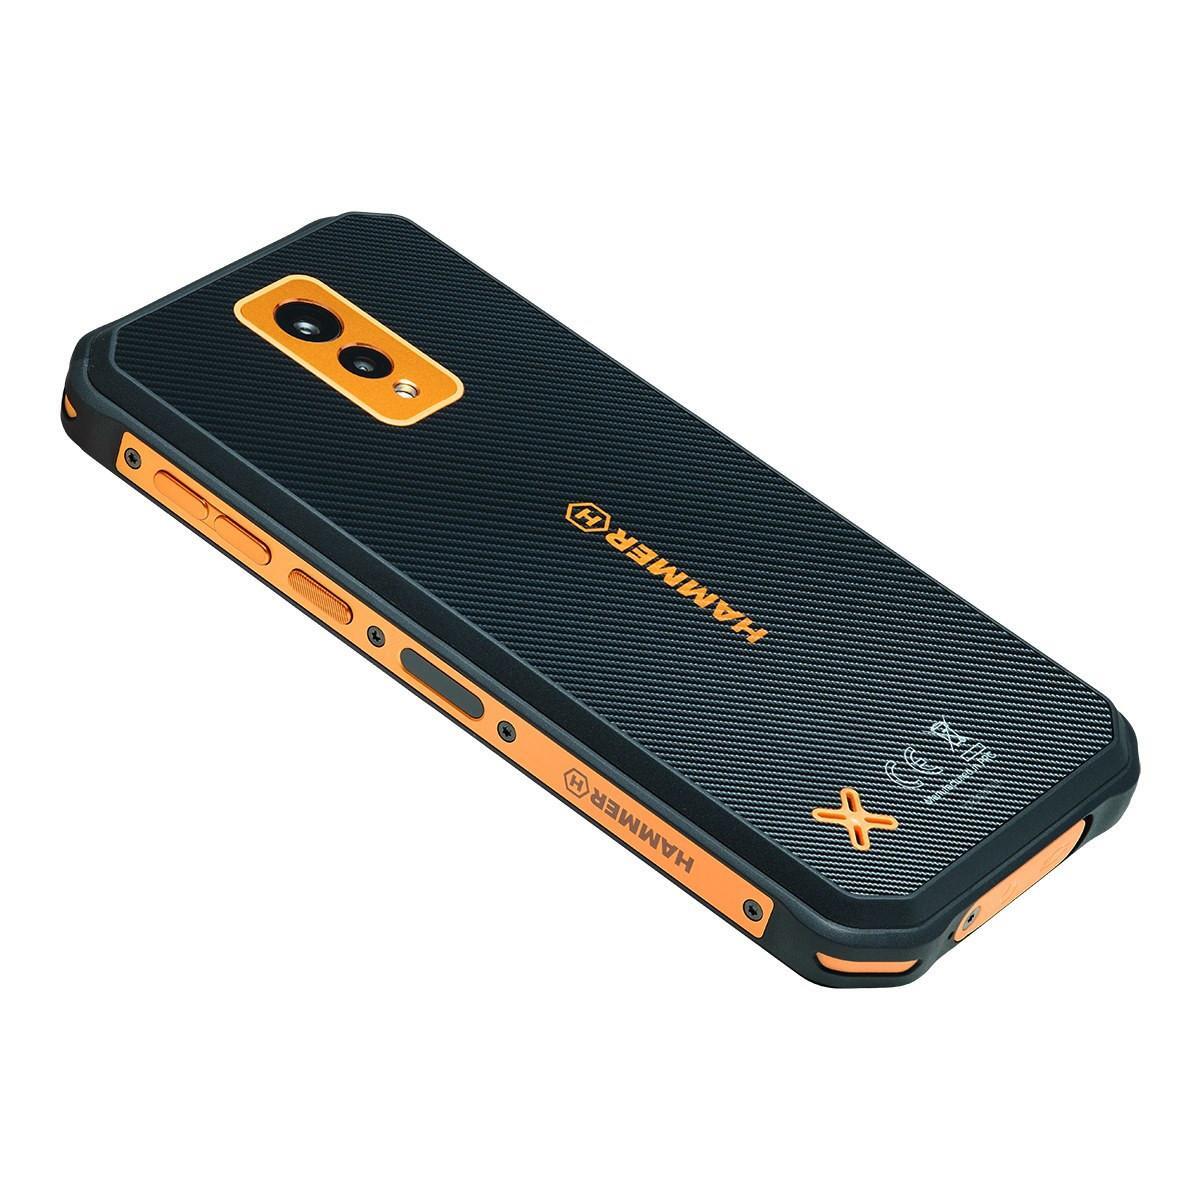 Odolný telefon myPhone Hammer Energy X 4G/64GB, oranžový 